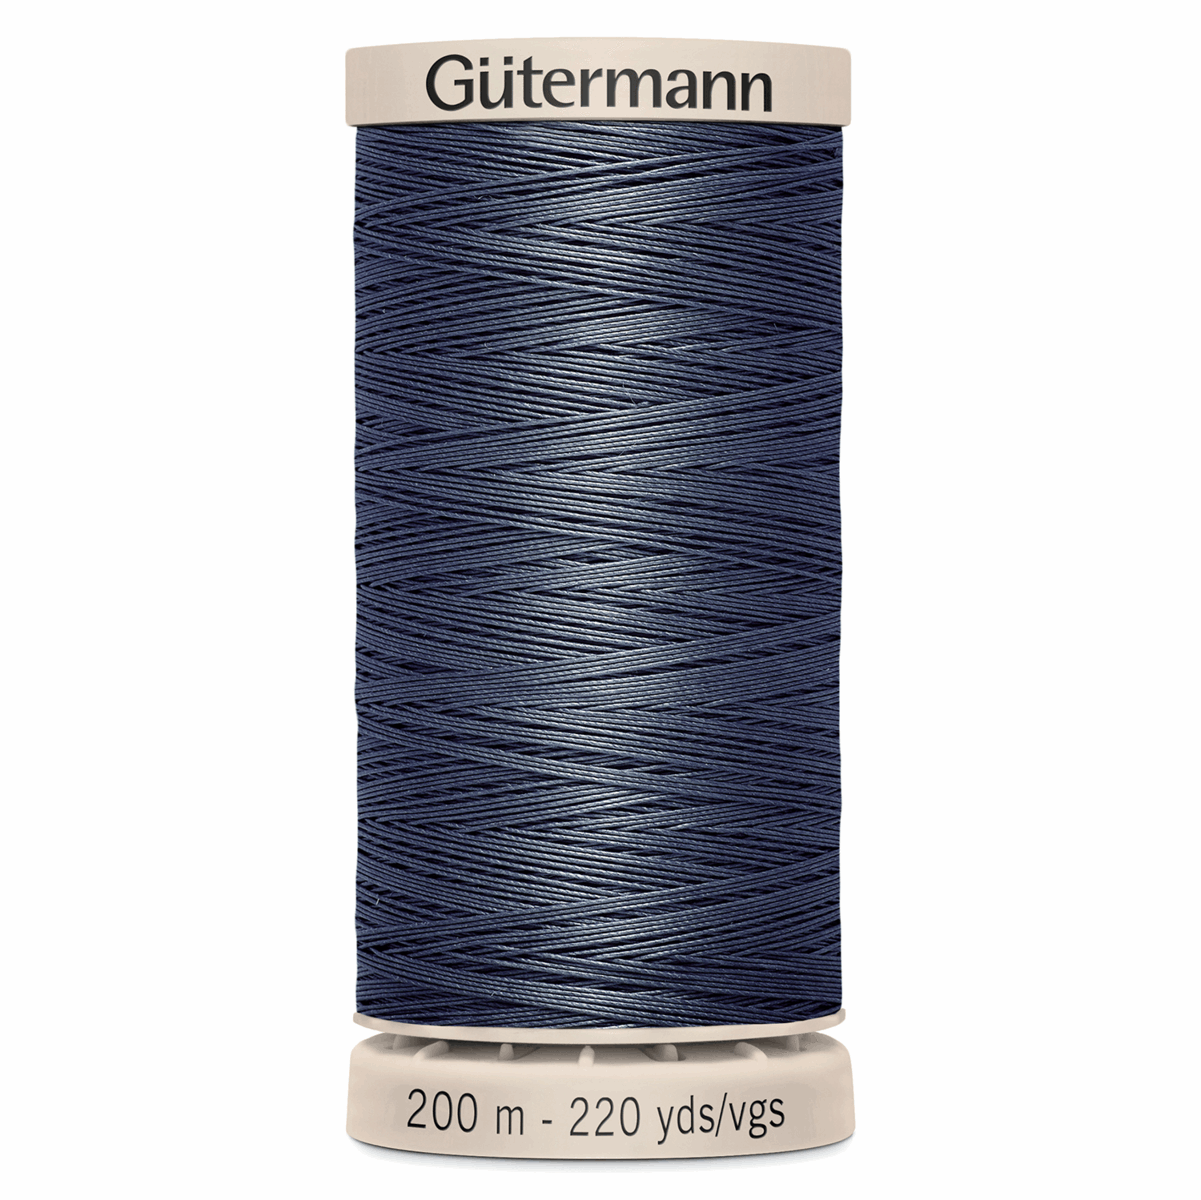 Gutermann Quilting Thread 200m - Colour 5114